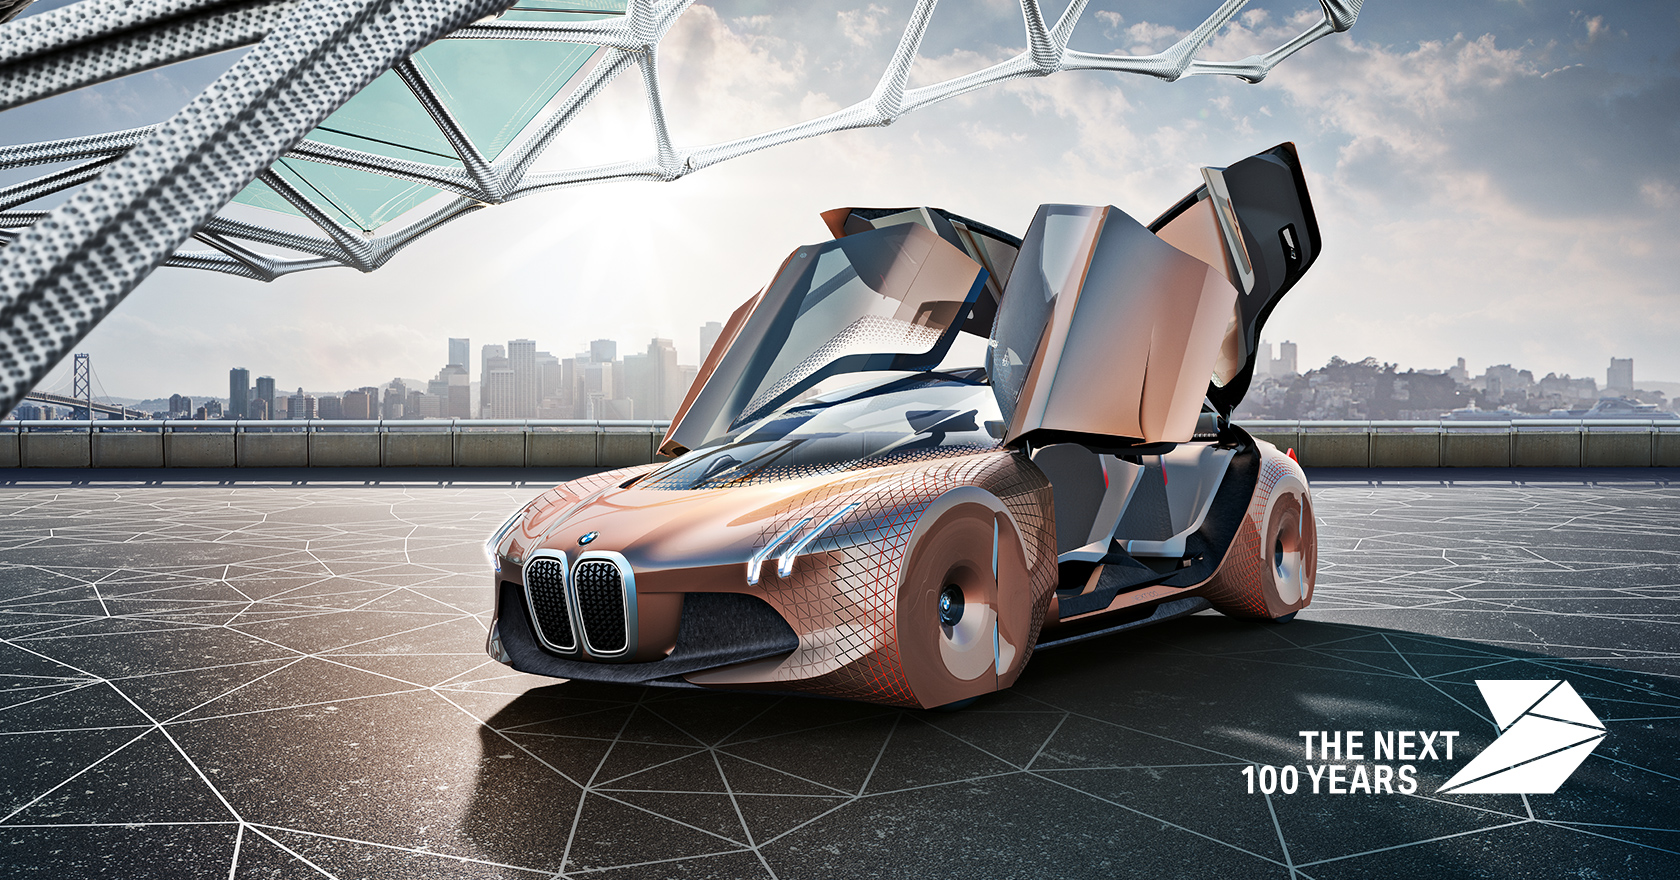 Framtidens bil enligt BMW